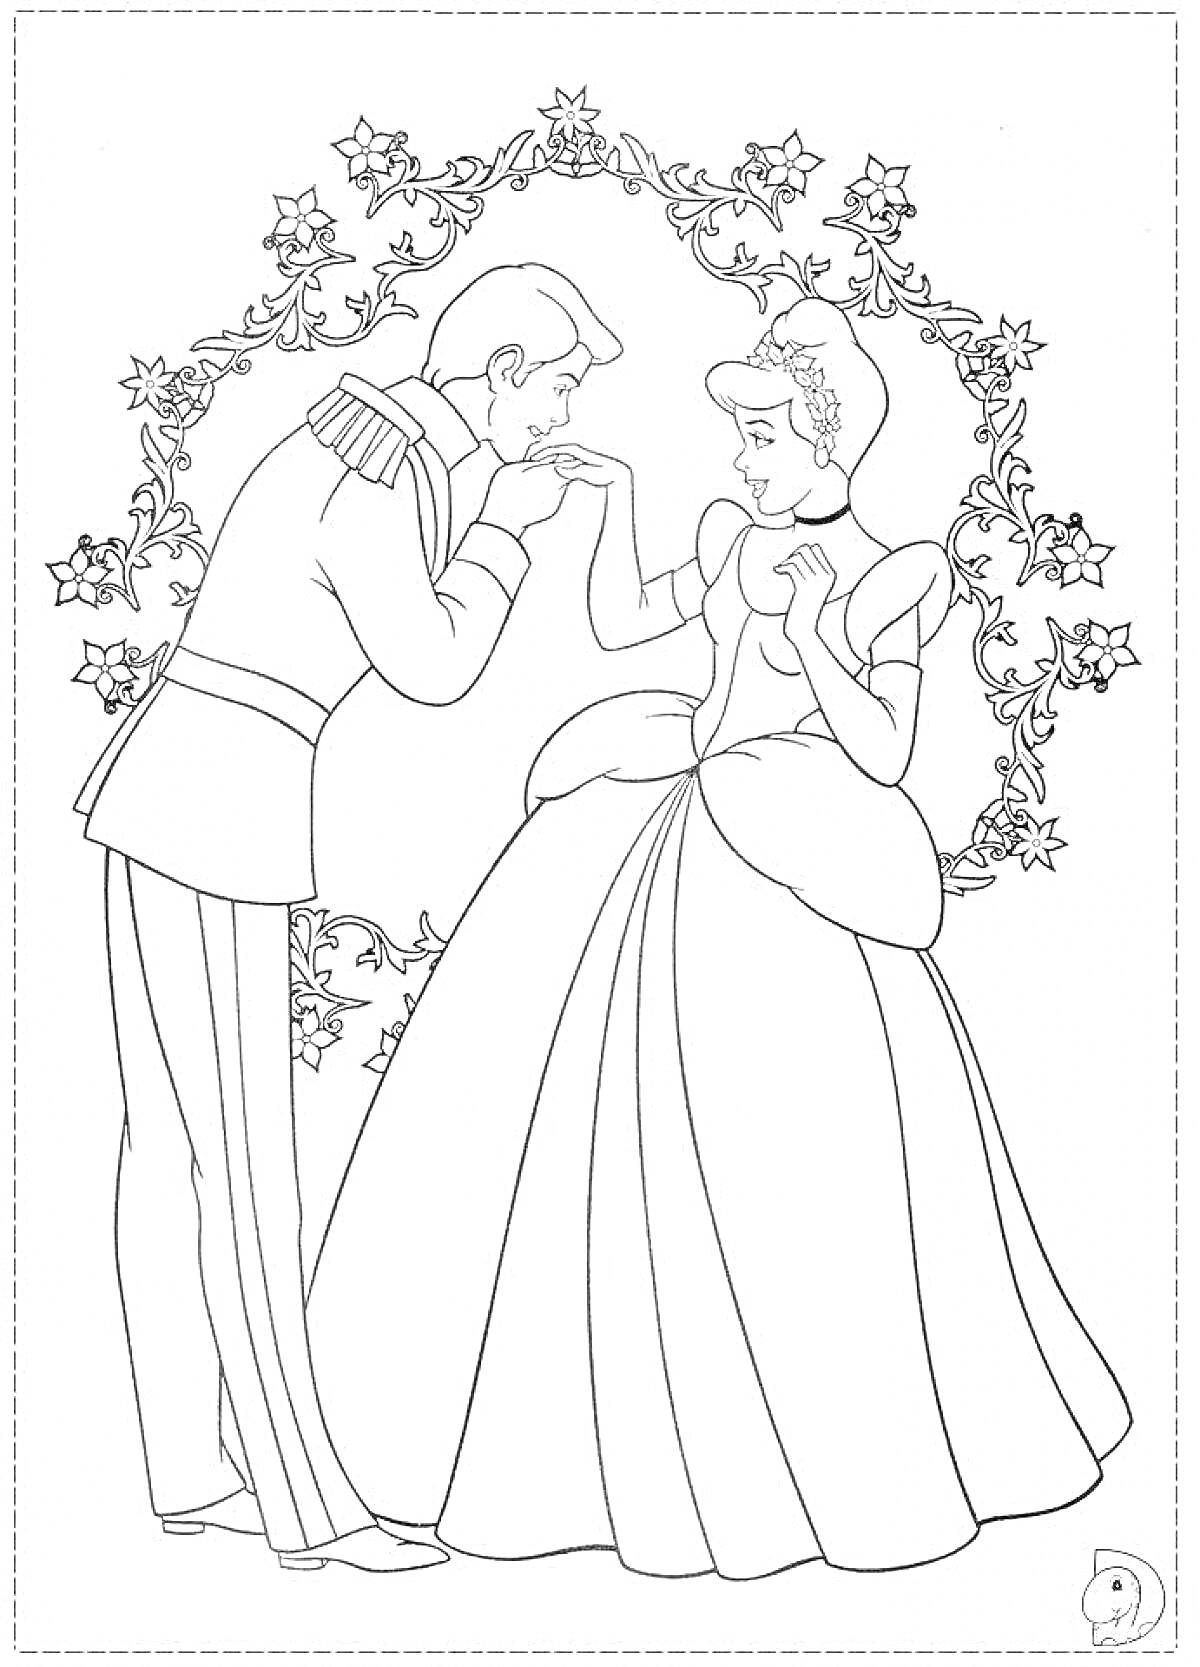 Раскраска Золушка и принц на балу среди цветочной арки